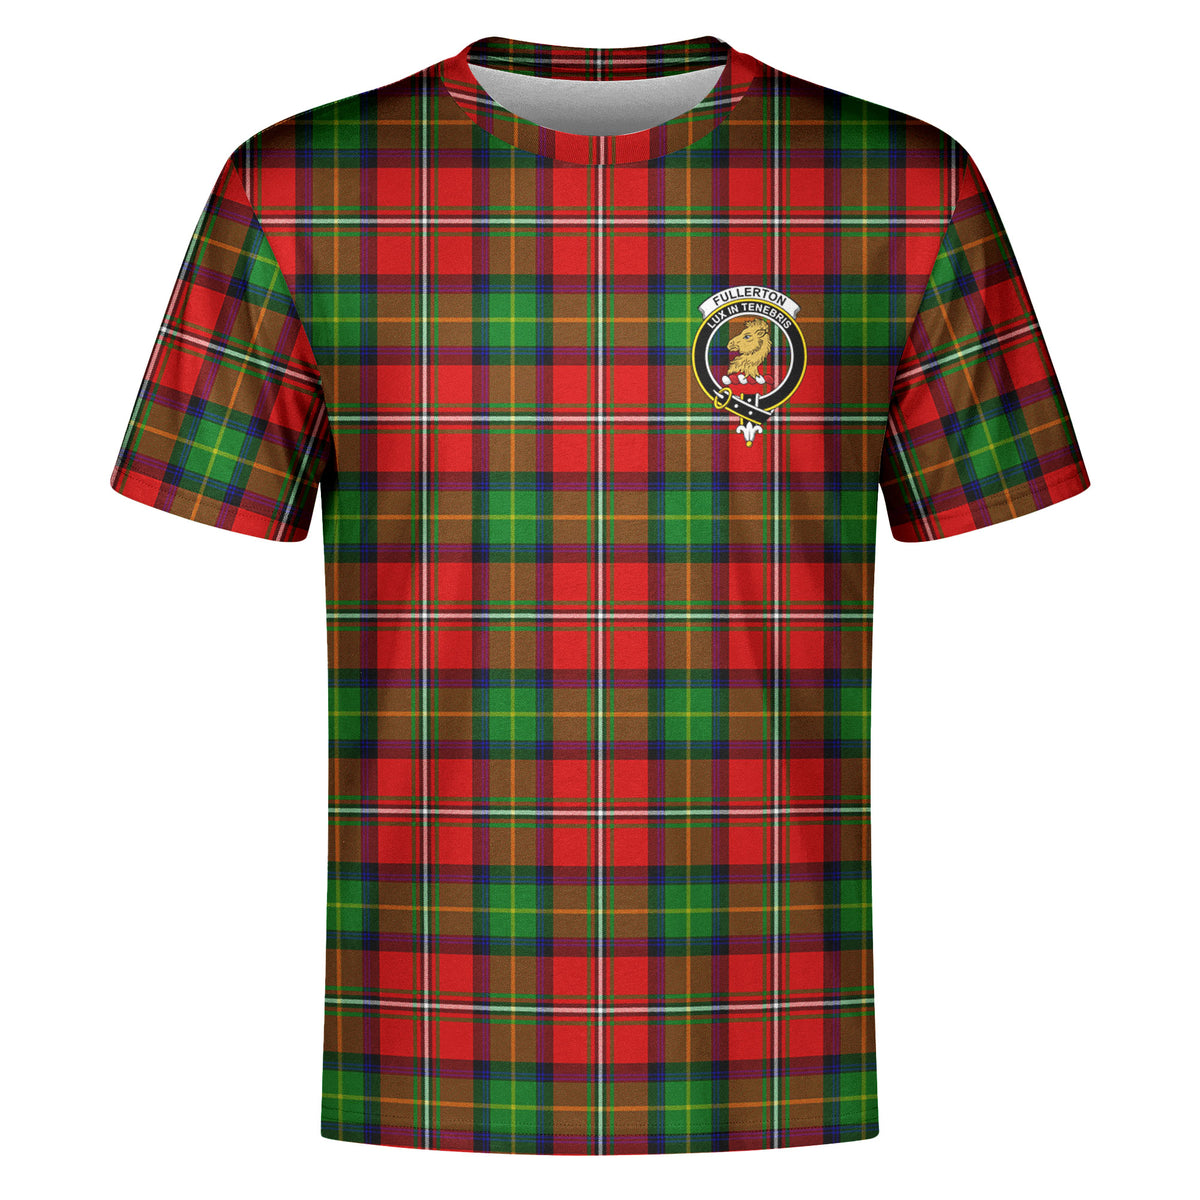 Fullerton Tartan Crest T-shirt